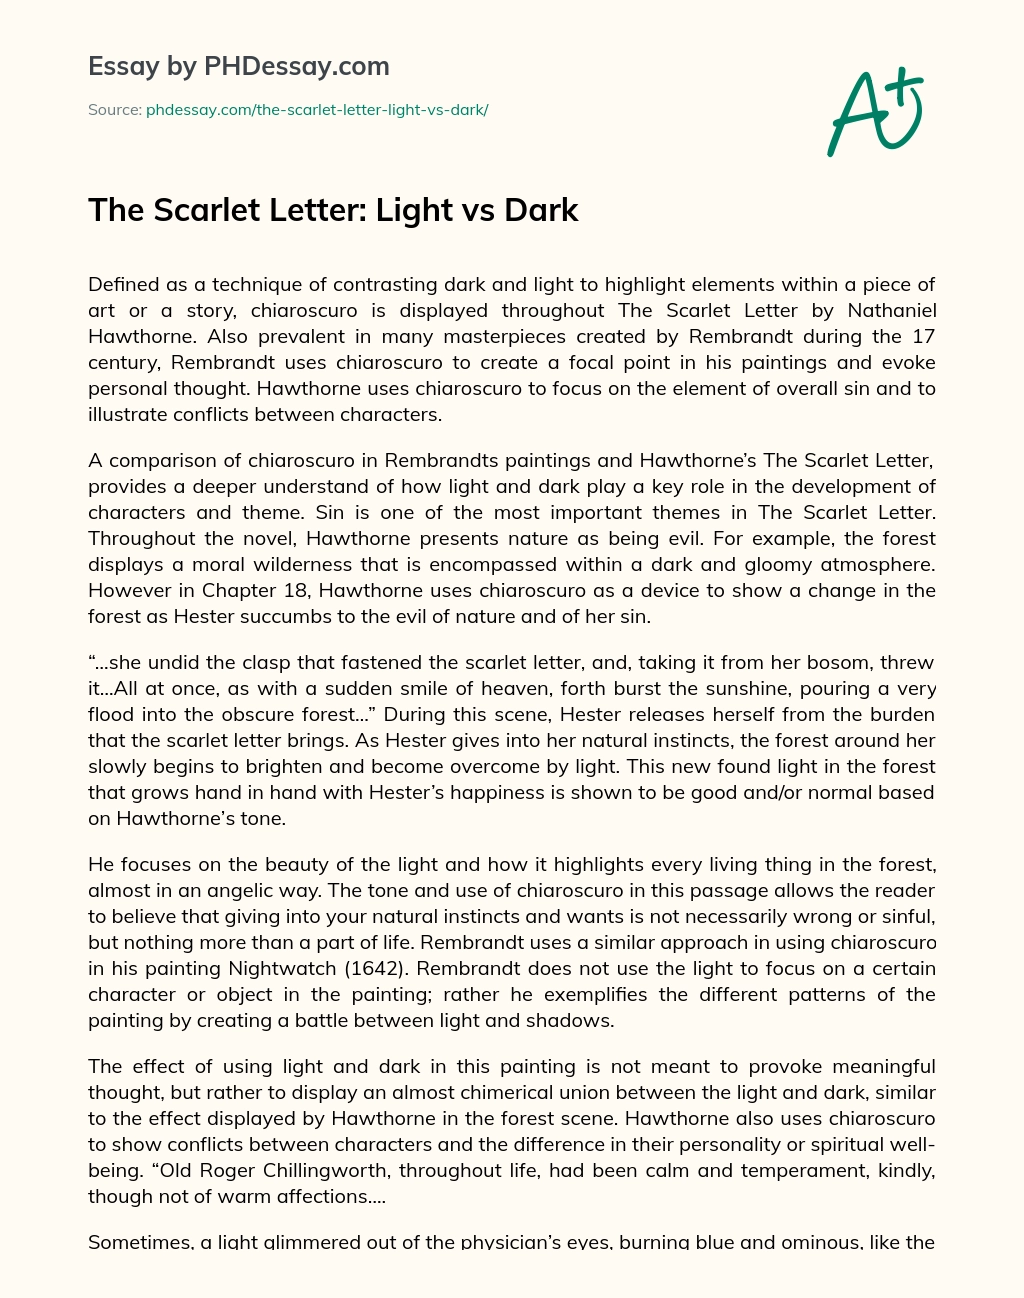 The Scarlet Letter: Light vs Dark essay